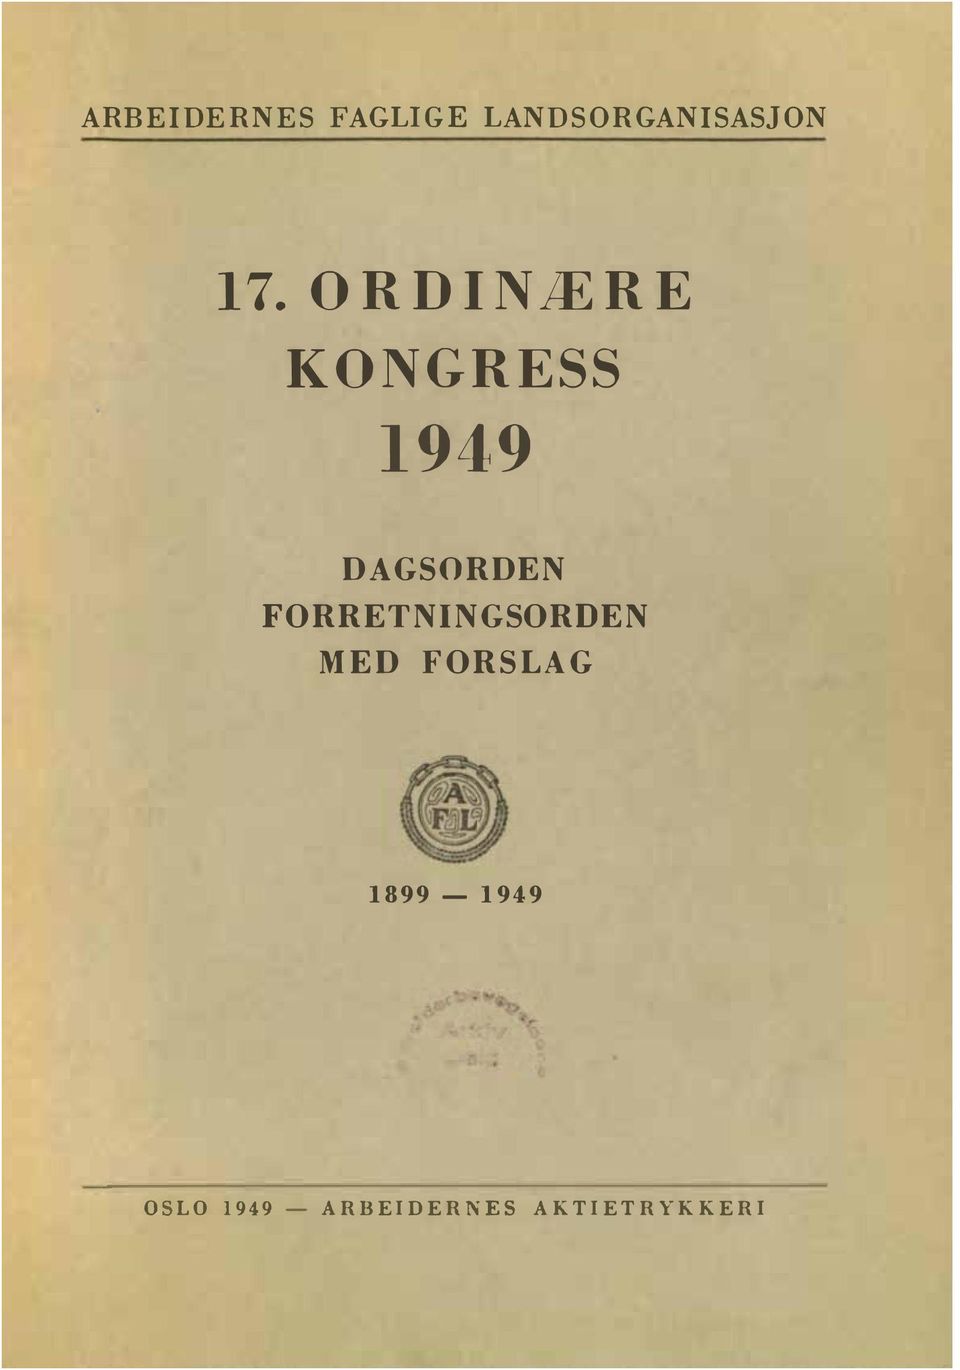 FORRETNINGSORDEN MED FORSLAG 1899-1949